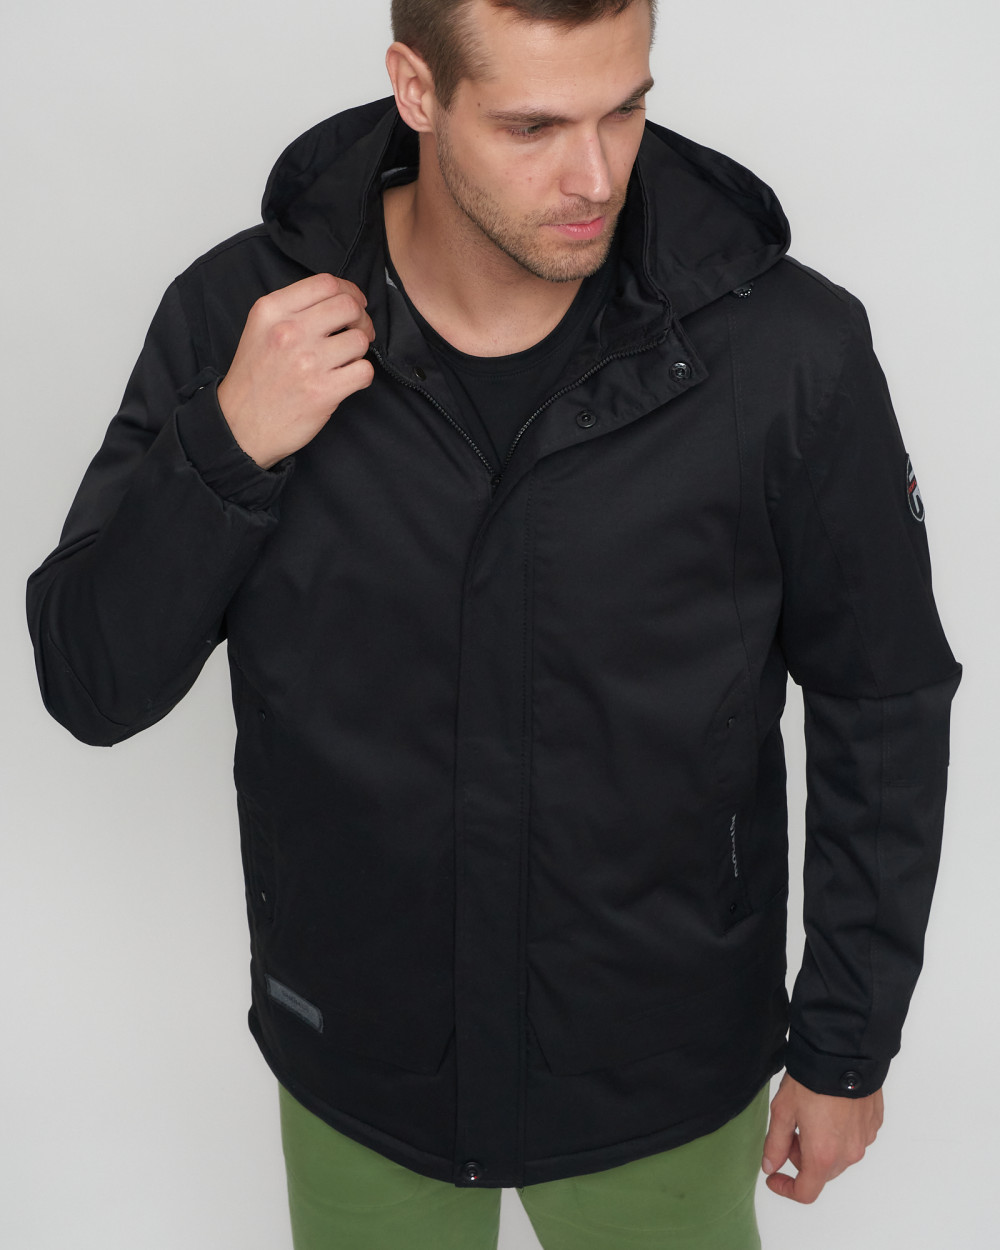 Купить куртку мужскую спортивную весеннюю оптом от производителя недорого в Москве 8599Ch 1